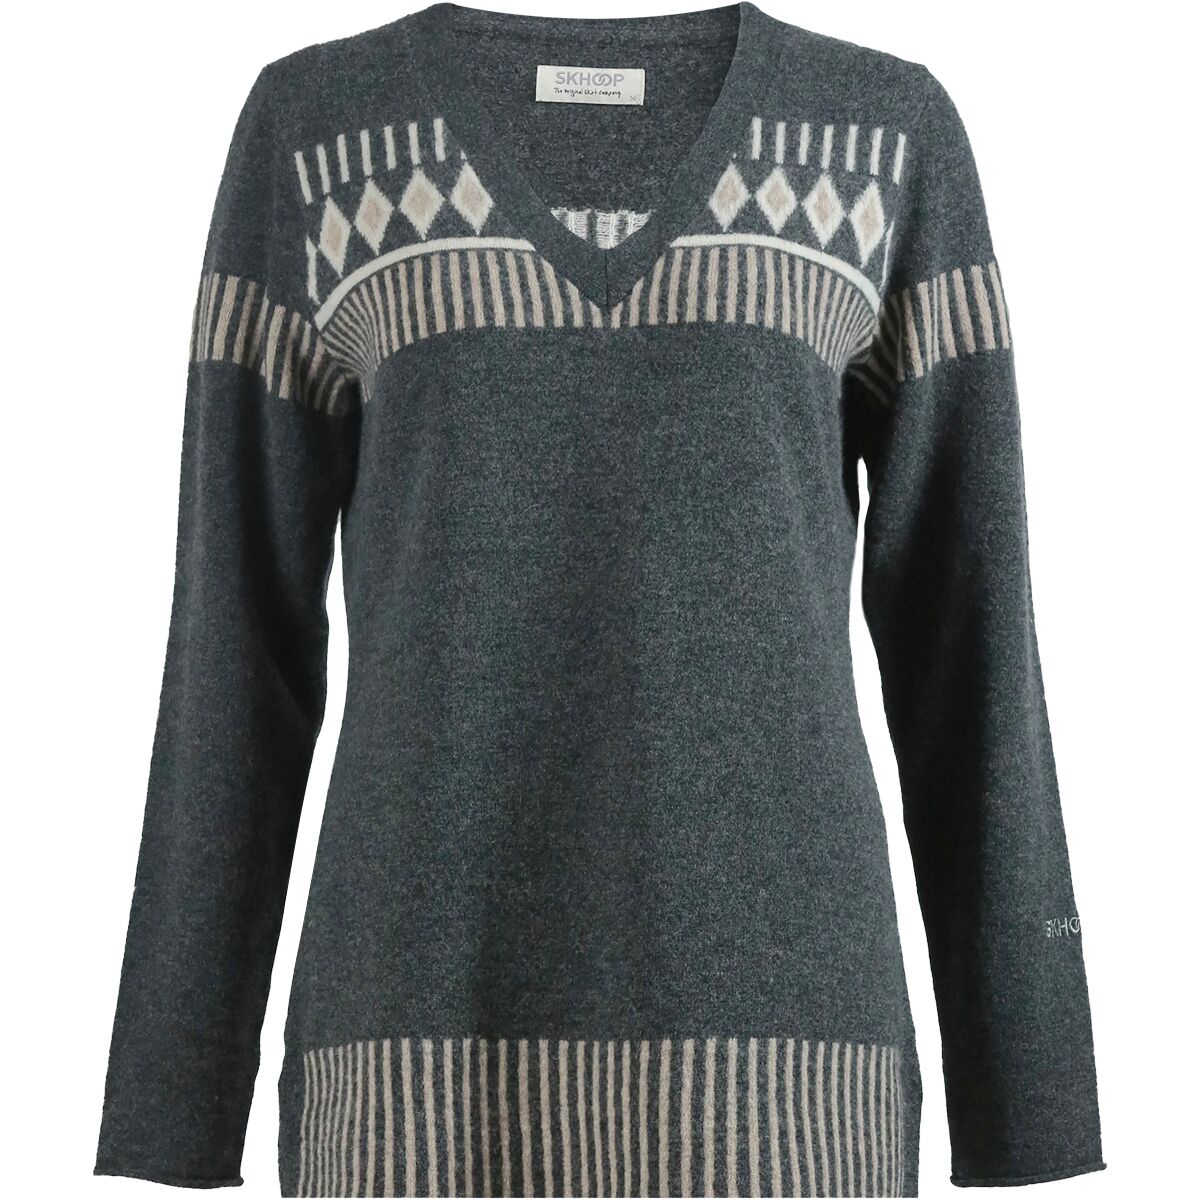 SKHOOP Tindra V-Neck Sweater - Women's